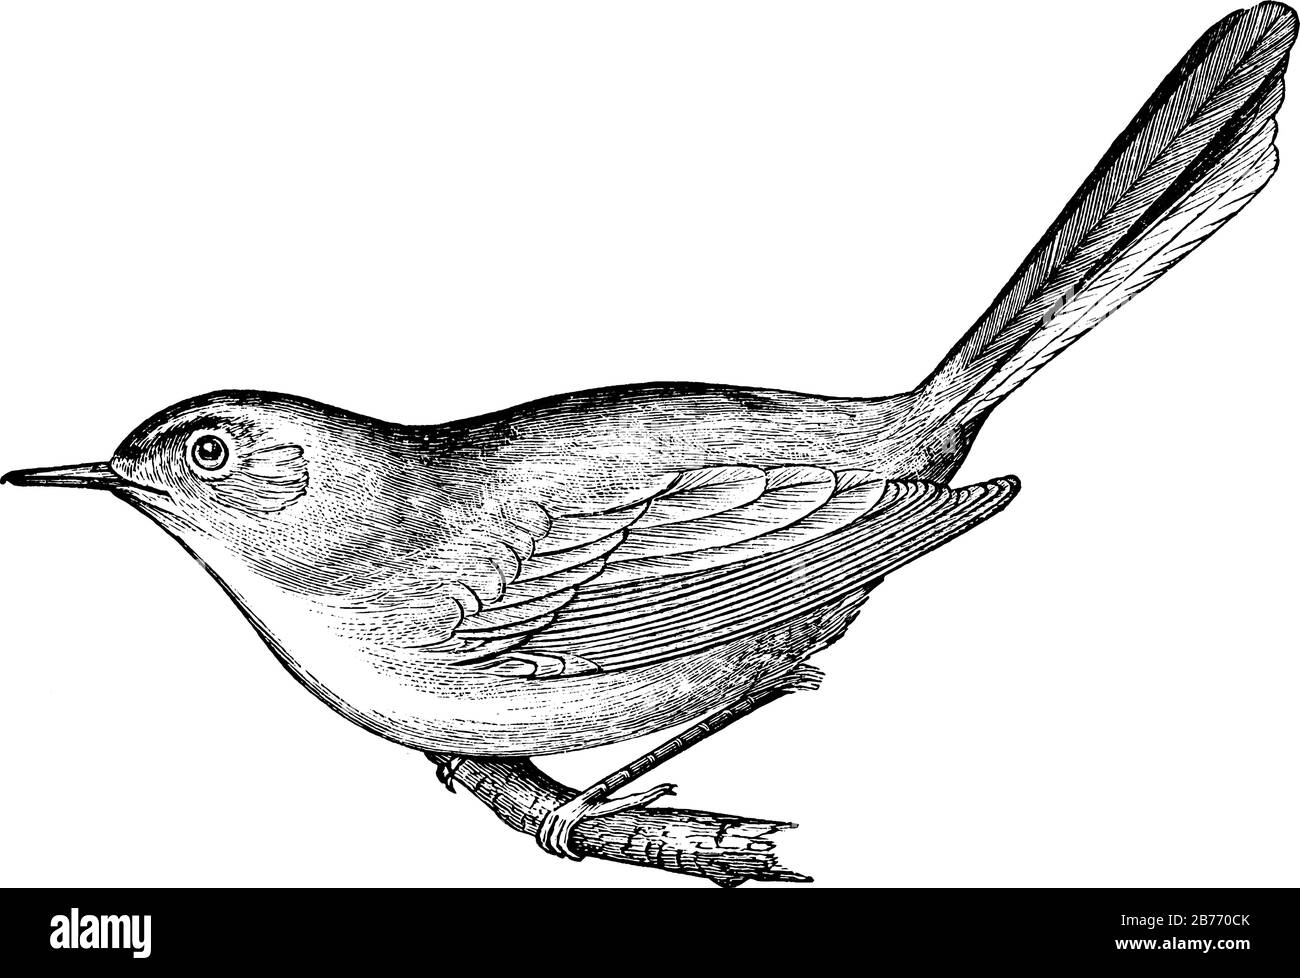 Der blaugraue Gnatcatcher, ein sehr kleiner Singvogel, der eine schlanke dunkle Rechnung hat, ein langer schwarzer Schwanz, der in Weiß und einem weißen Augenring umrandet ist, Vintage Line dr. Stock Vektor